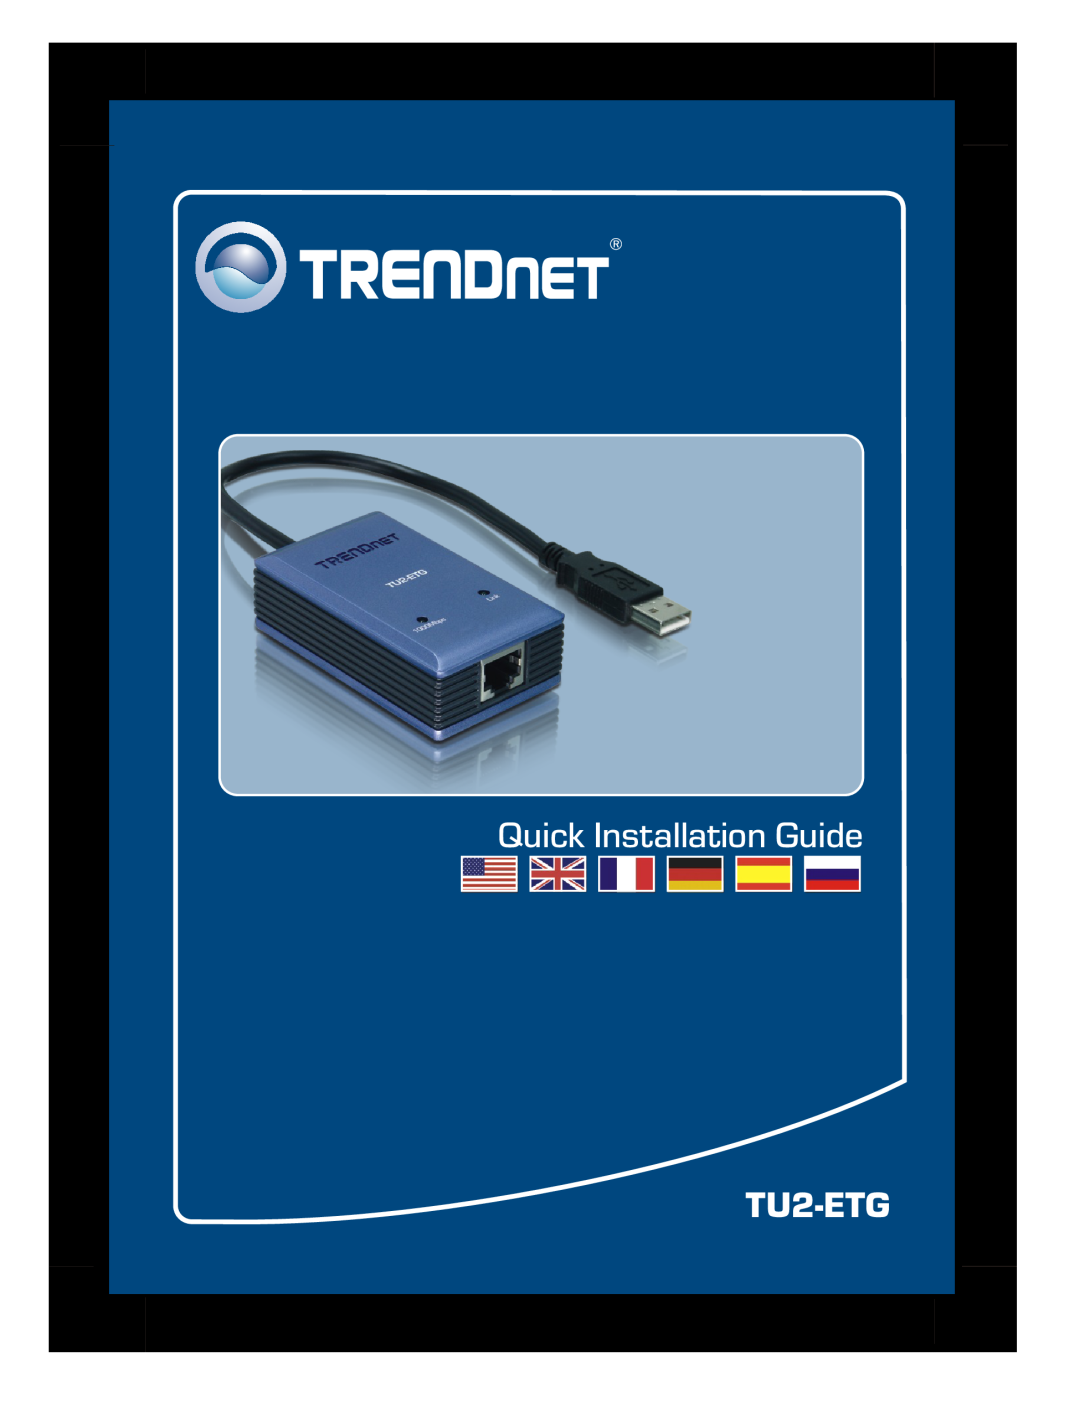 TRENDnet TU2-ETG manual Quick Installation Guide 